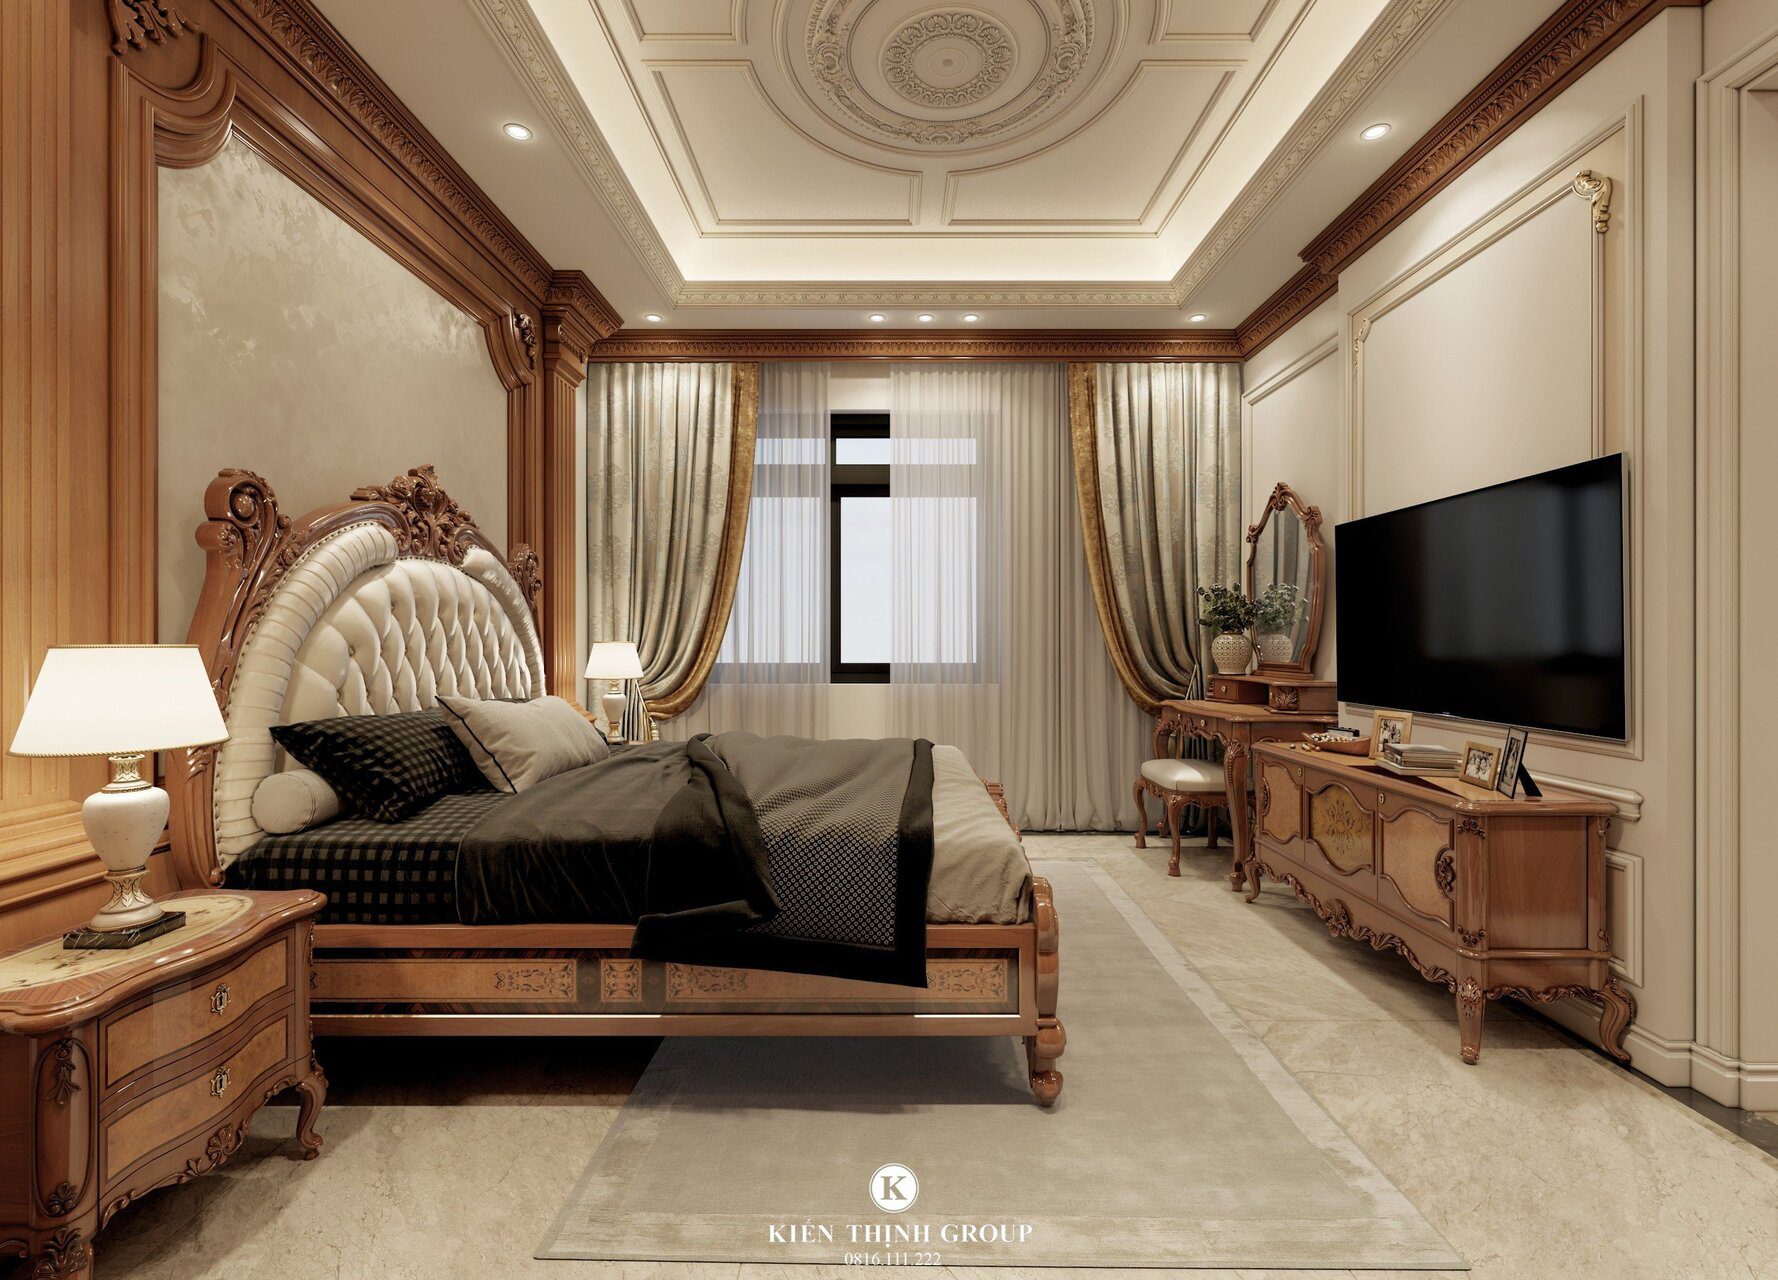 Mẫu thiết kế nội thất phòng ngủ master 2 mang phong cách kiến trúc tân cổ điển